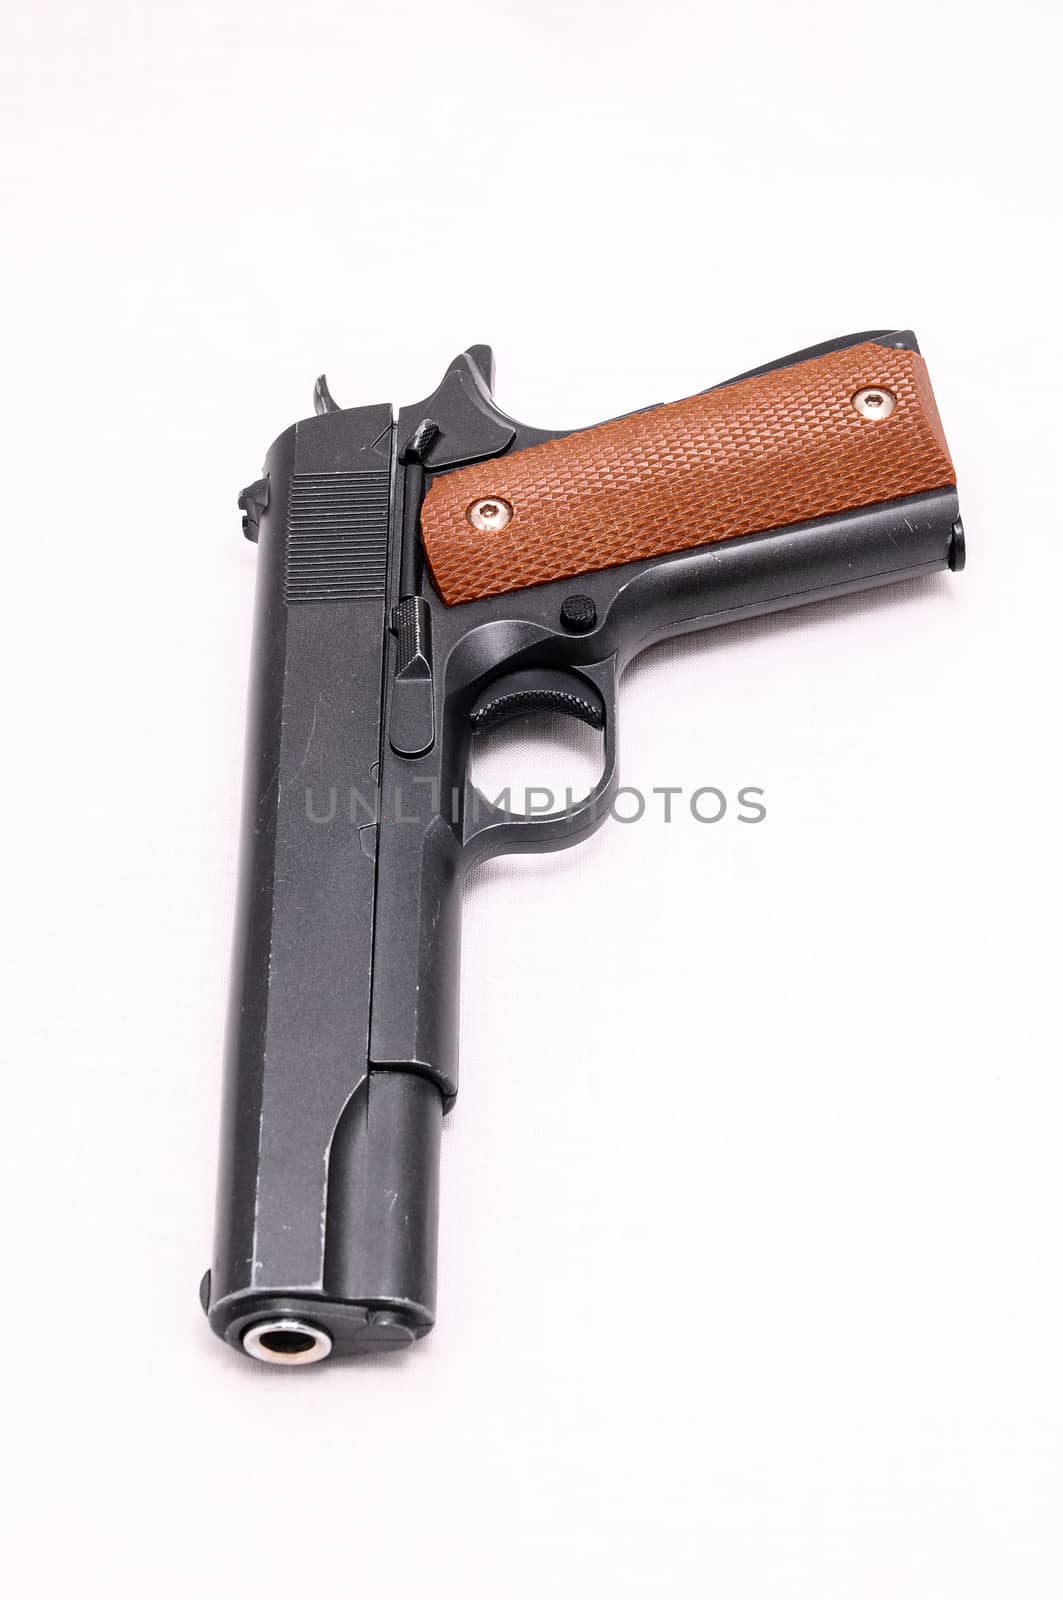 Pistol Handgun by underworld